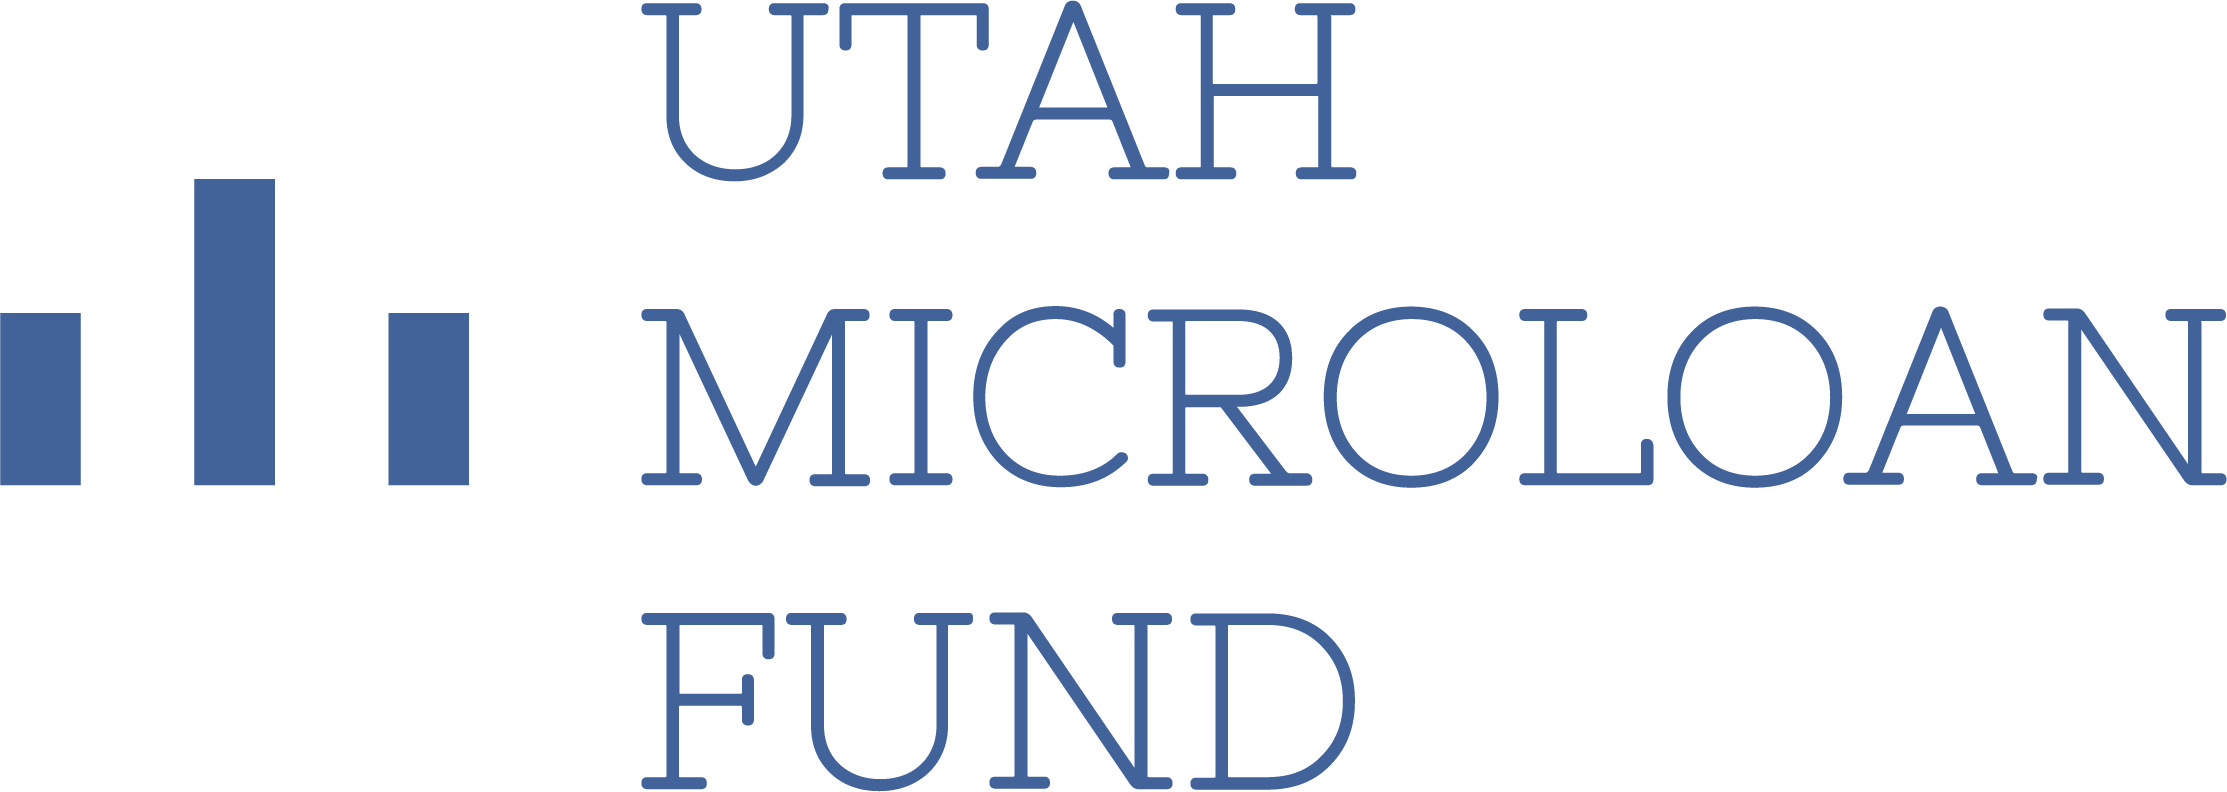 Utah Microloan Fund